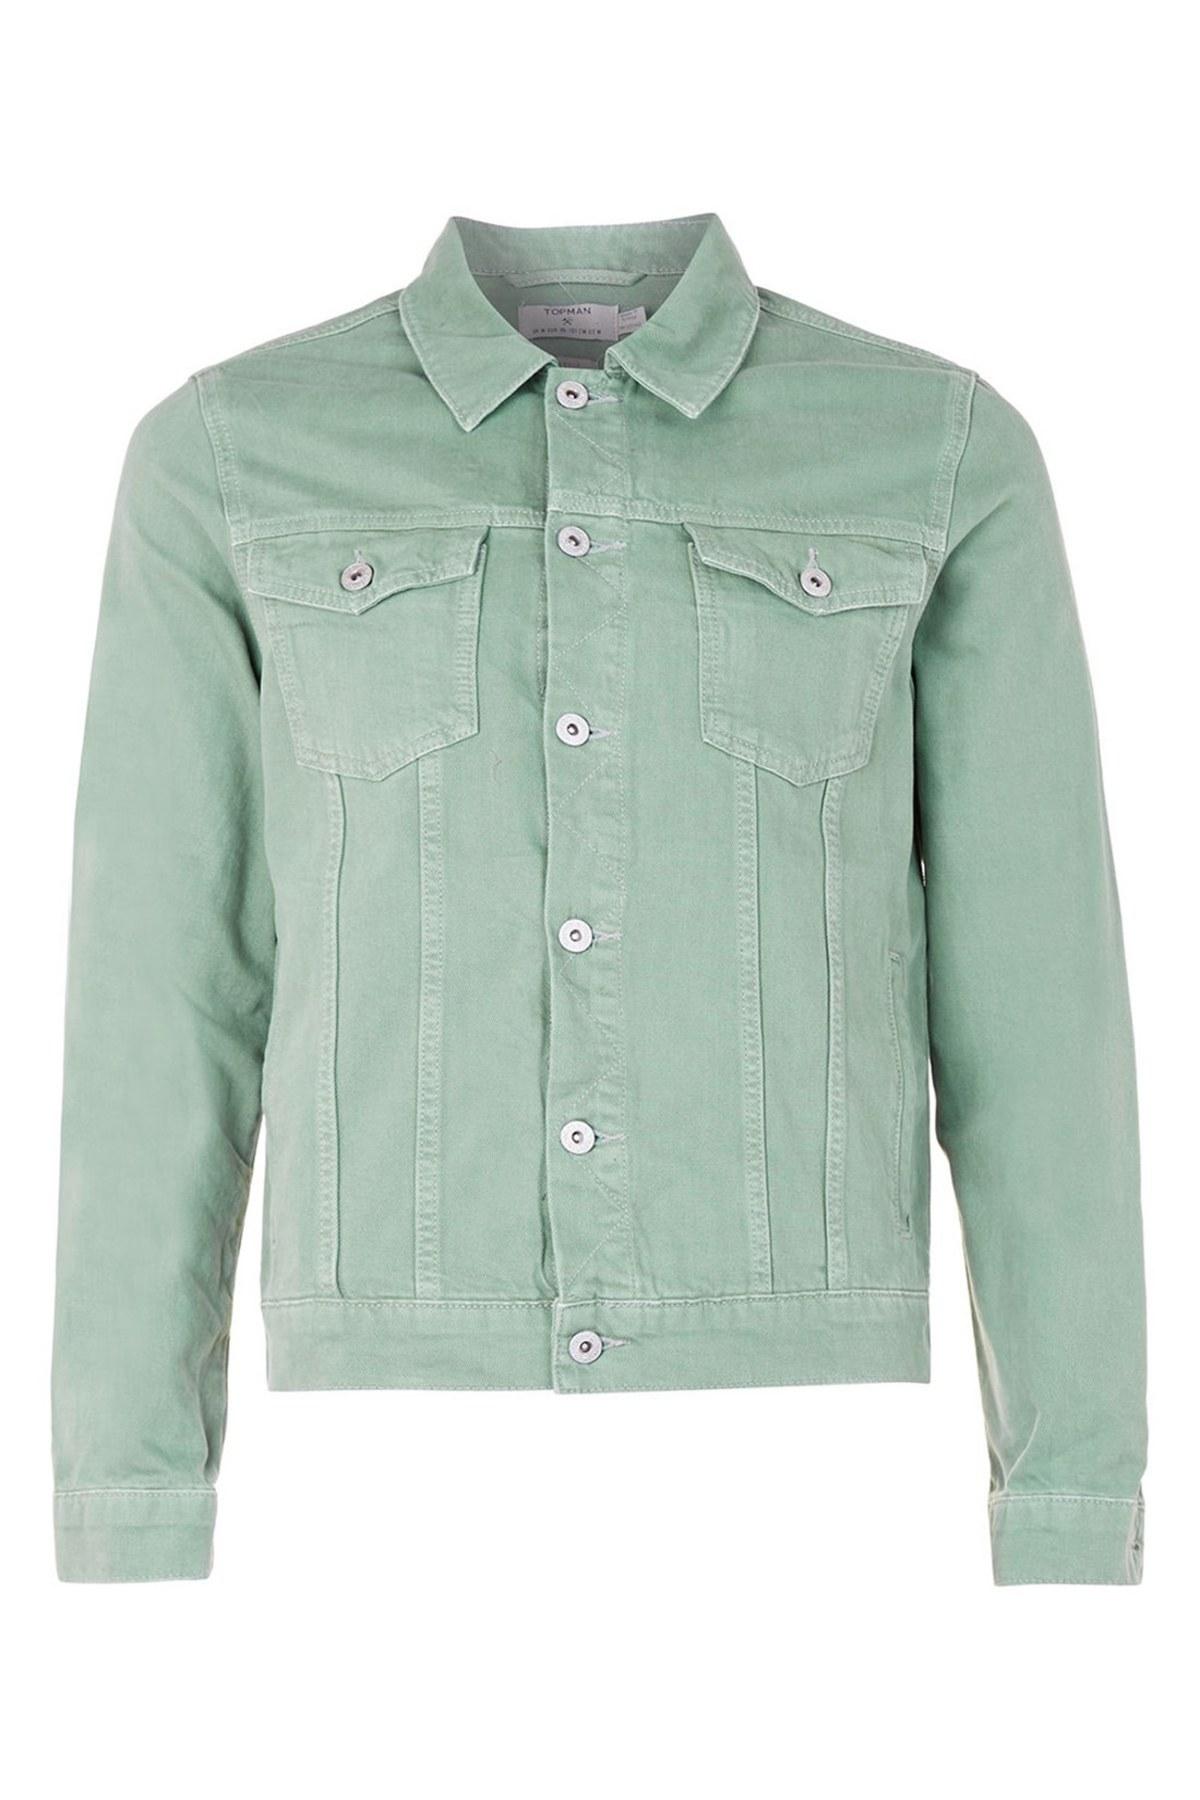 TOPMAN Light Green Denim Jacket for Men | Lyst